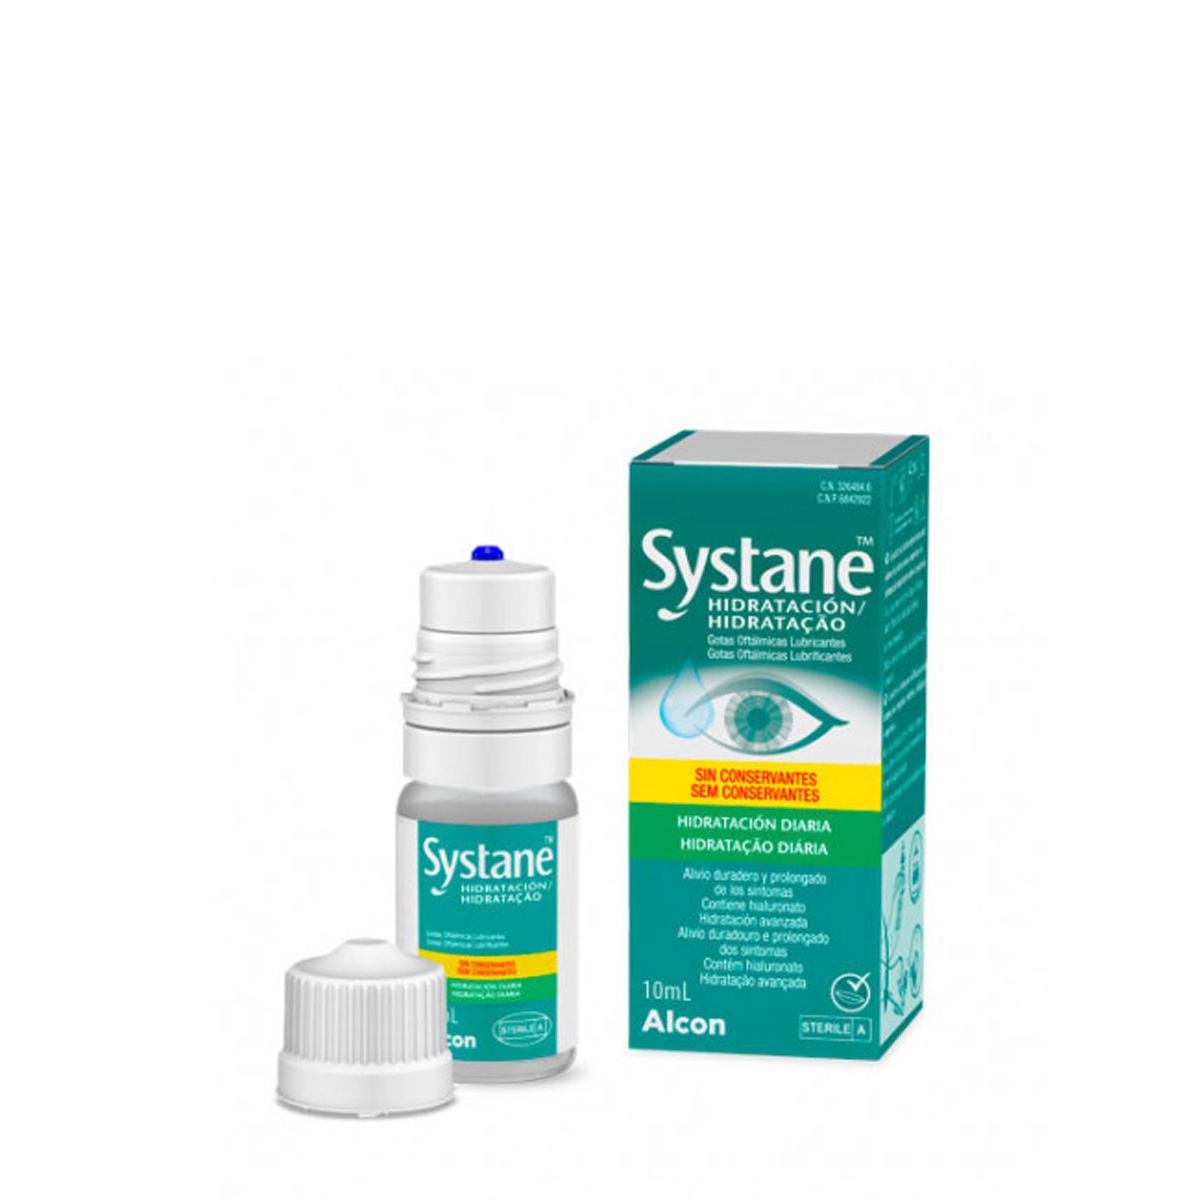 Systane - Systane hidratación gotas oftálmicas 10 ml